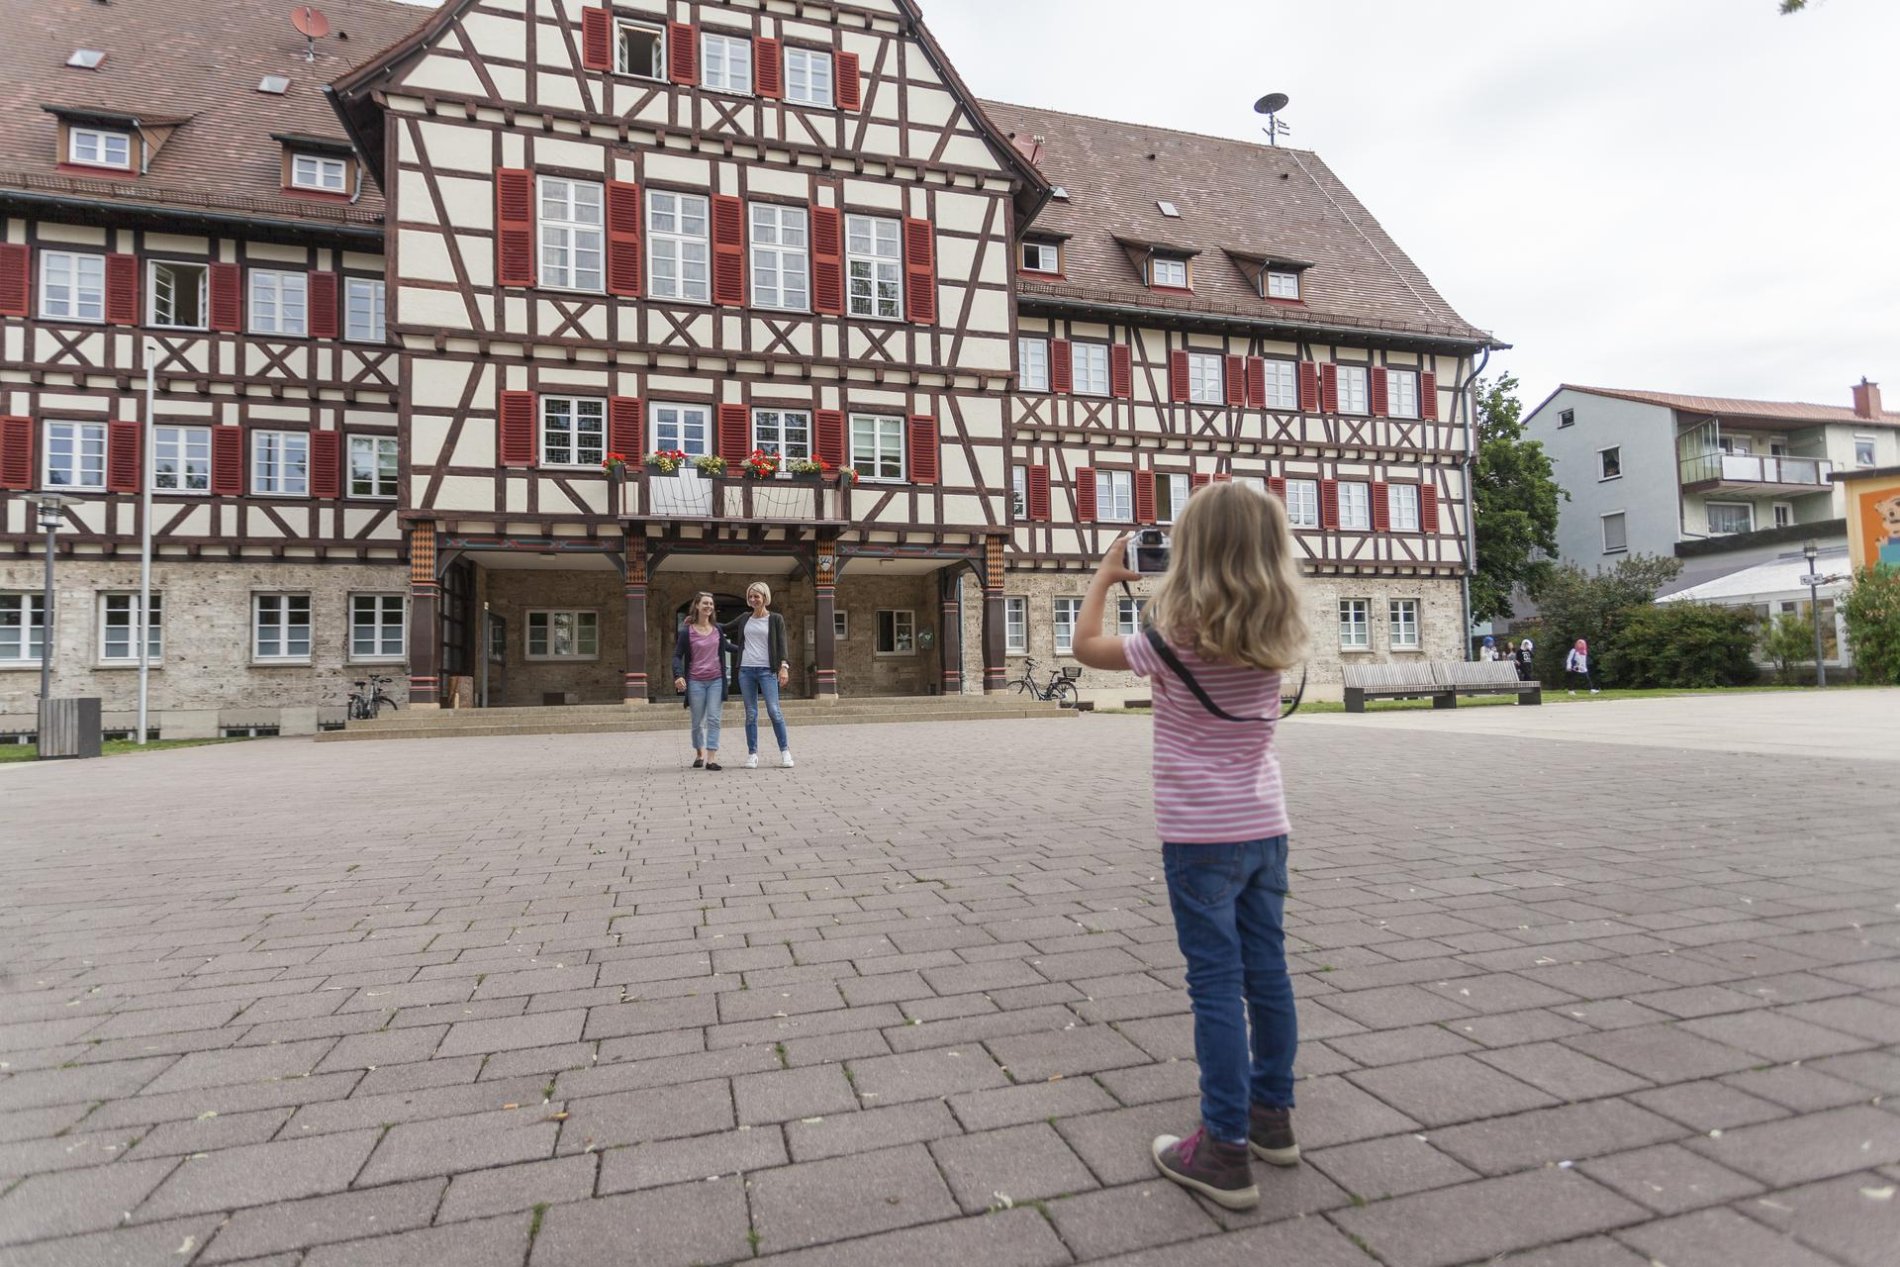 Das Rathaus in Münsingen im Biosphärengebiet Schwäbische Alb. Ein Kind steht mit einer Digitalkamera auf einem Platz und richtet diese in Richtung von zwei Erwachsenen, die sich vor einem historischen Fachwerkhaus aufstellen.